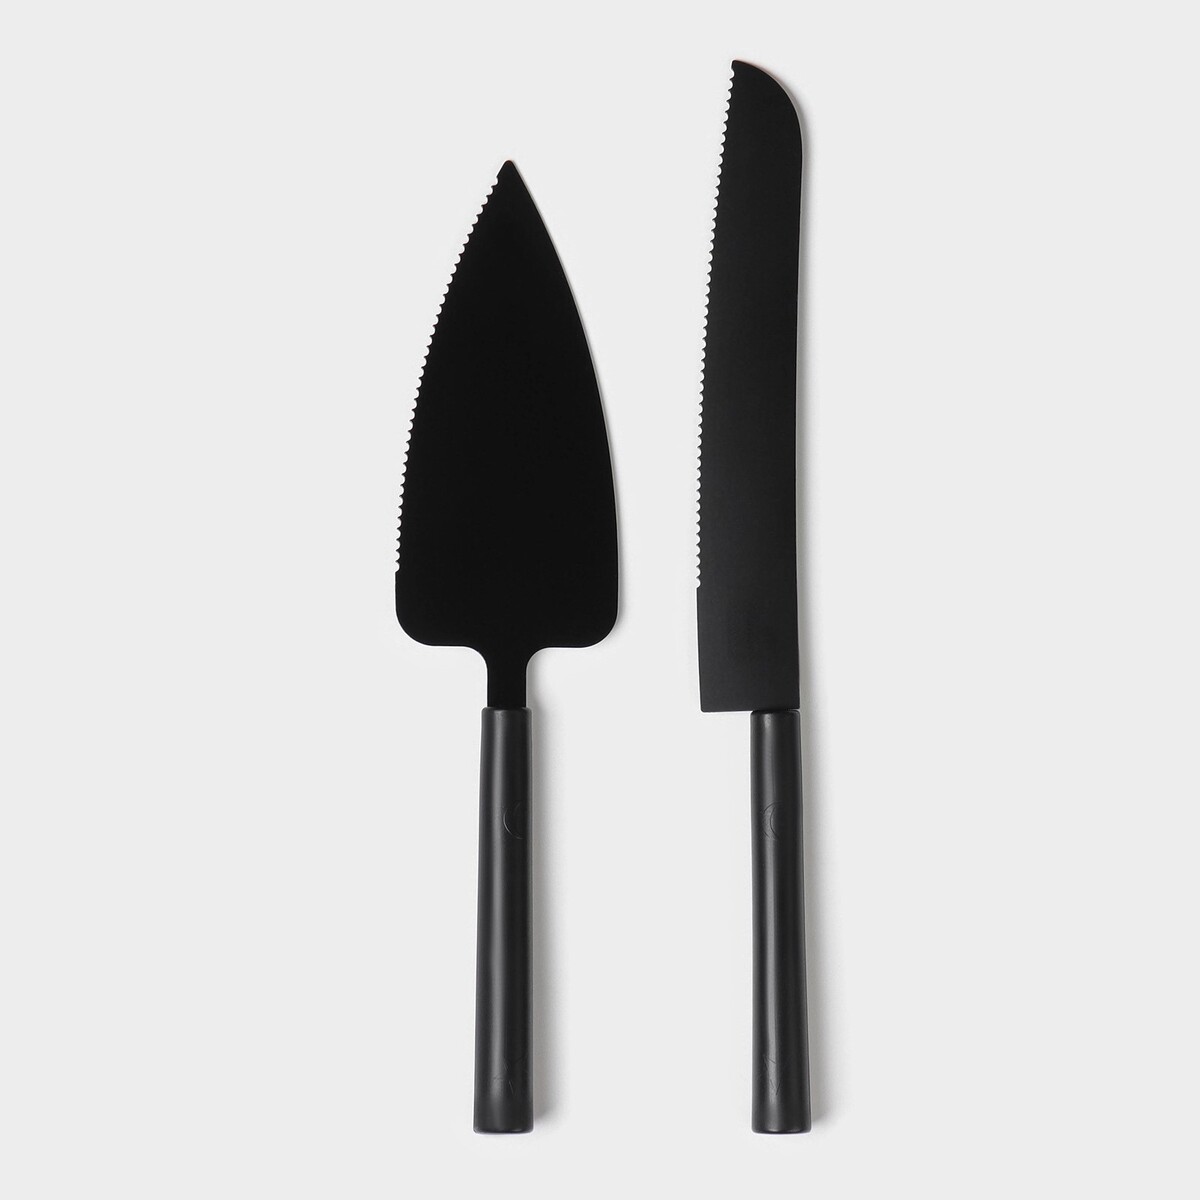 Набор кондитерских инструментов доляна black, 2 предмета: лопатка (длина лезвия 12,5 см), нож (длина лезвия 16,5 см), цвет черный набор кондитерских инструментов для моделирования konfinetta 7 предметов нержавеющая сталь